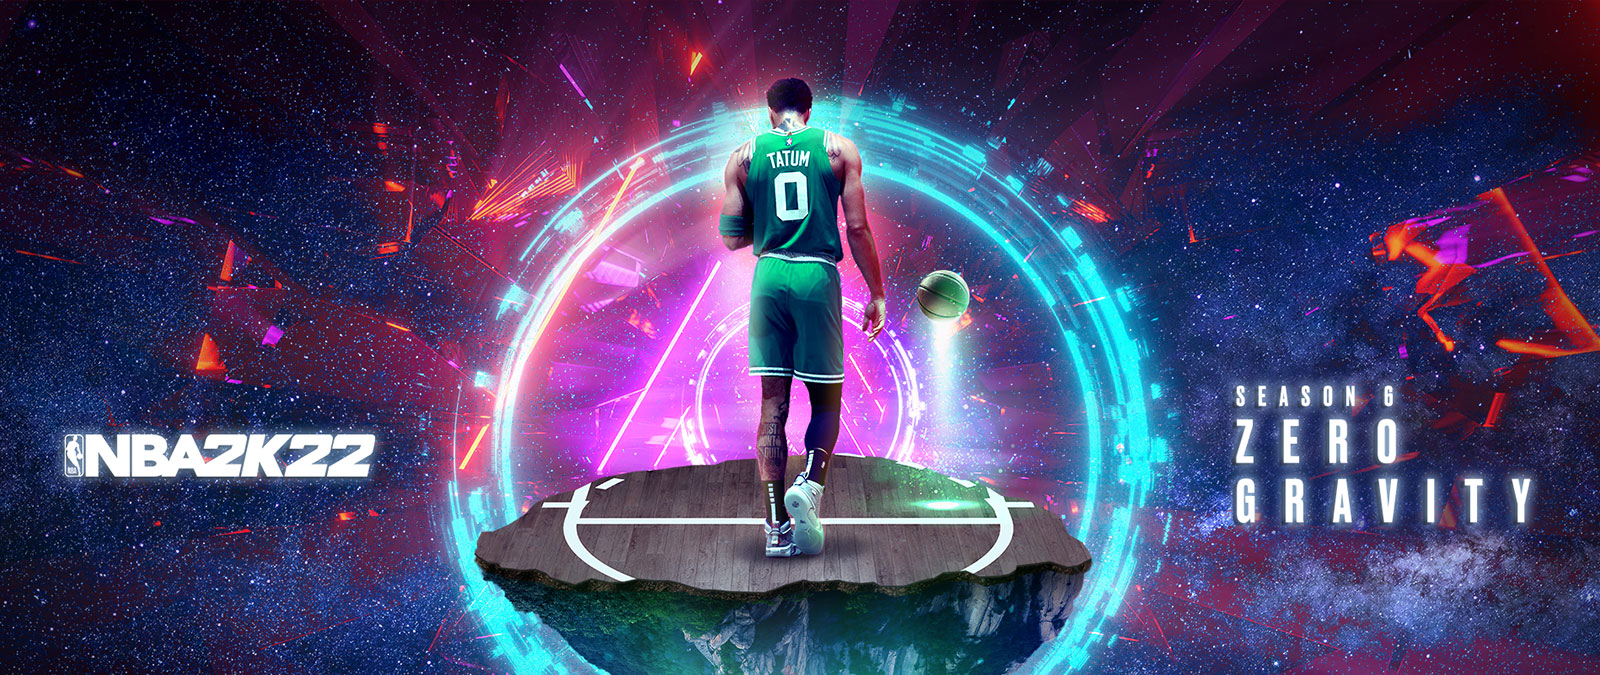 NBA 2K22, Temporada 6 Zero Gravity, Tatum está em um pedaço flutuante de uma quadra de basquete no espaço com anéis de energia em torno dele.